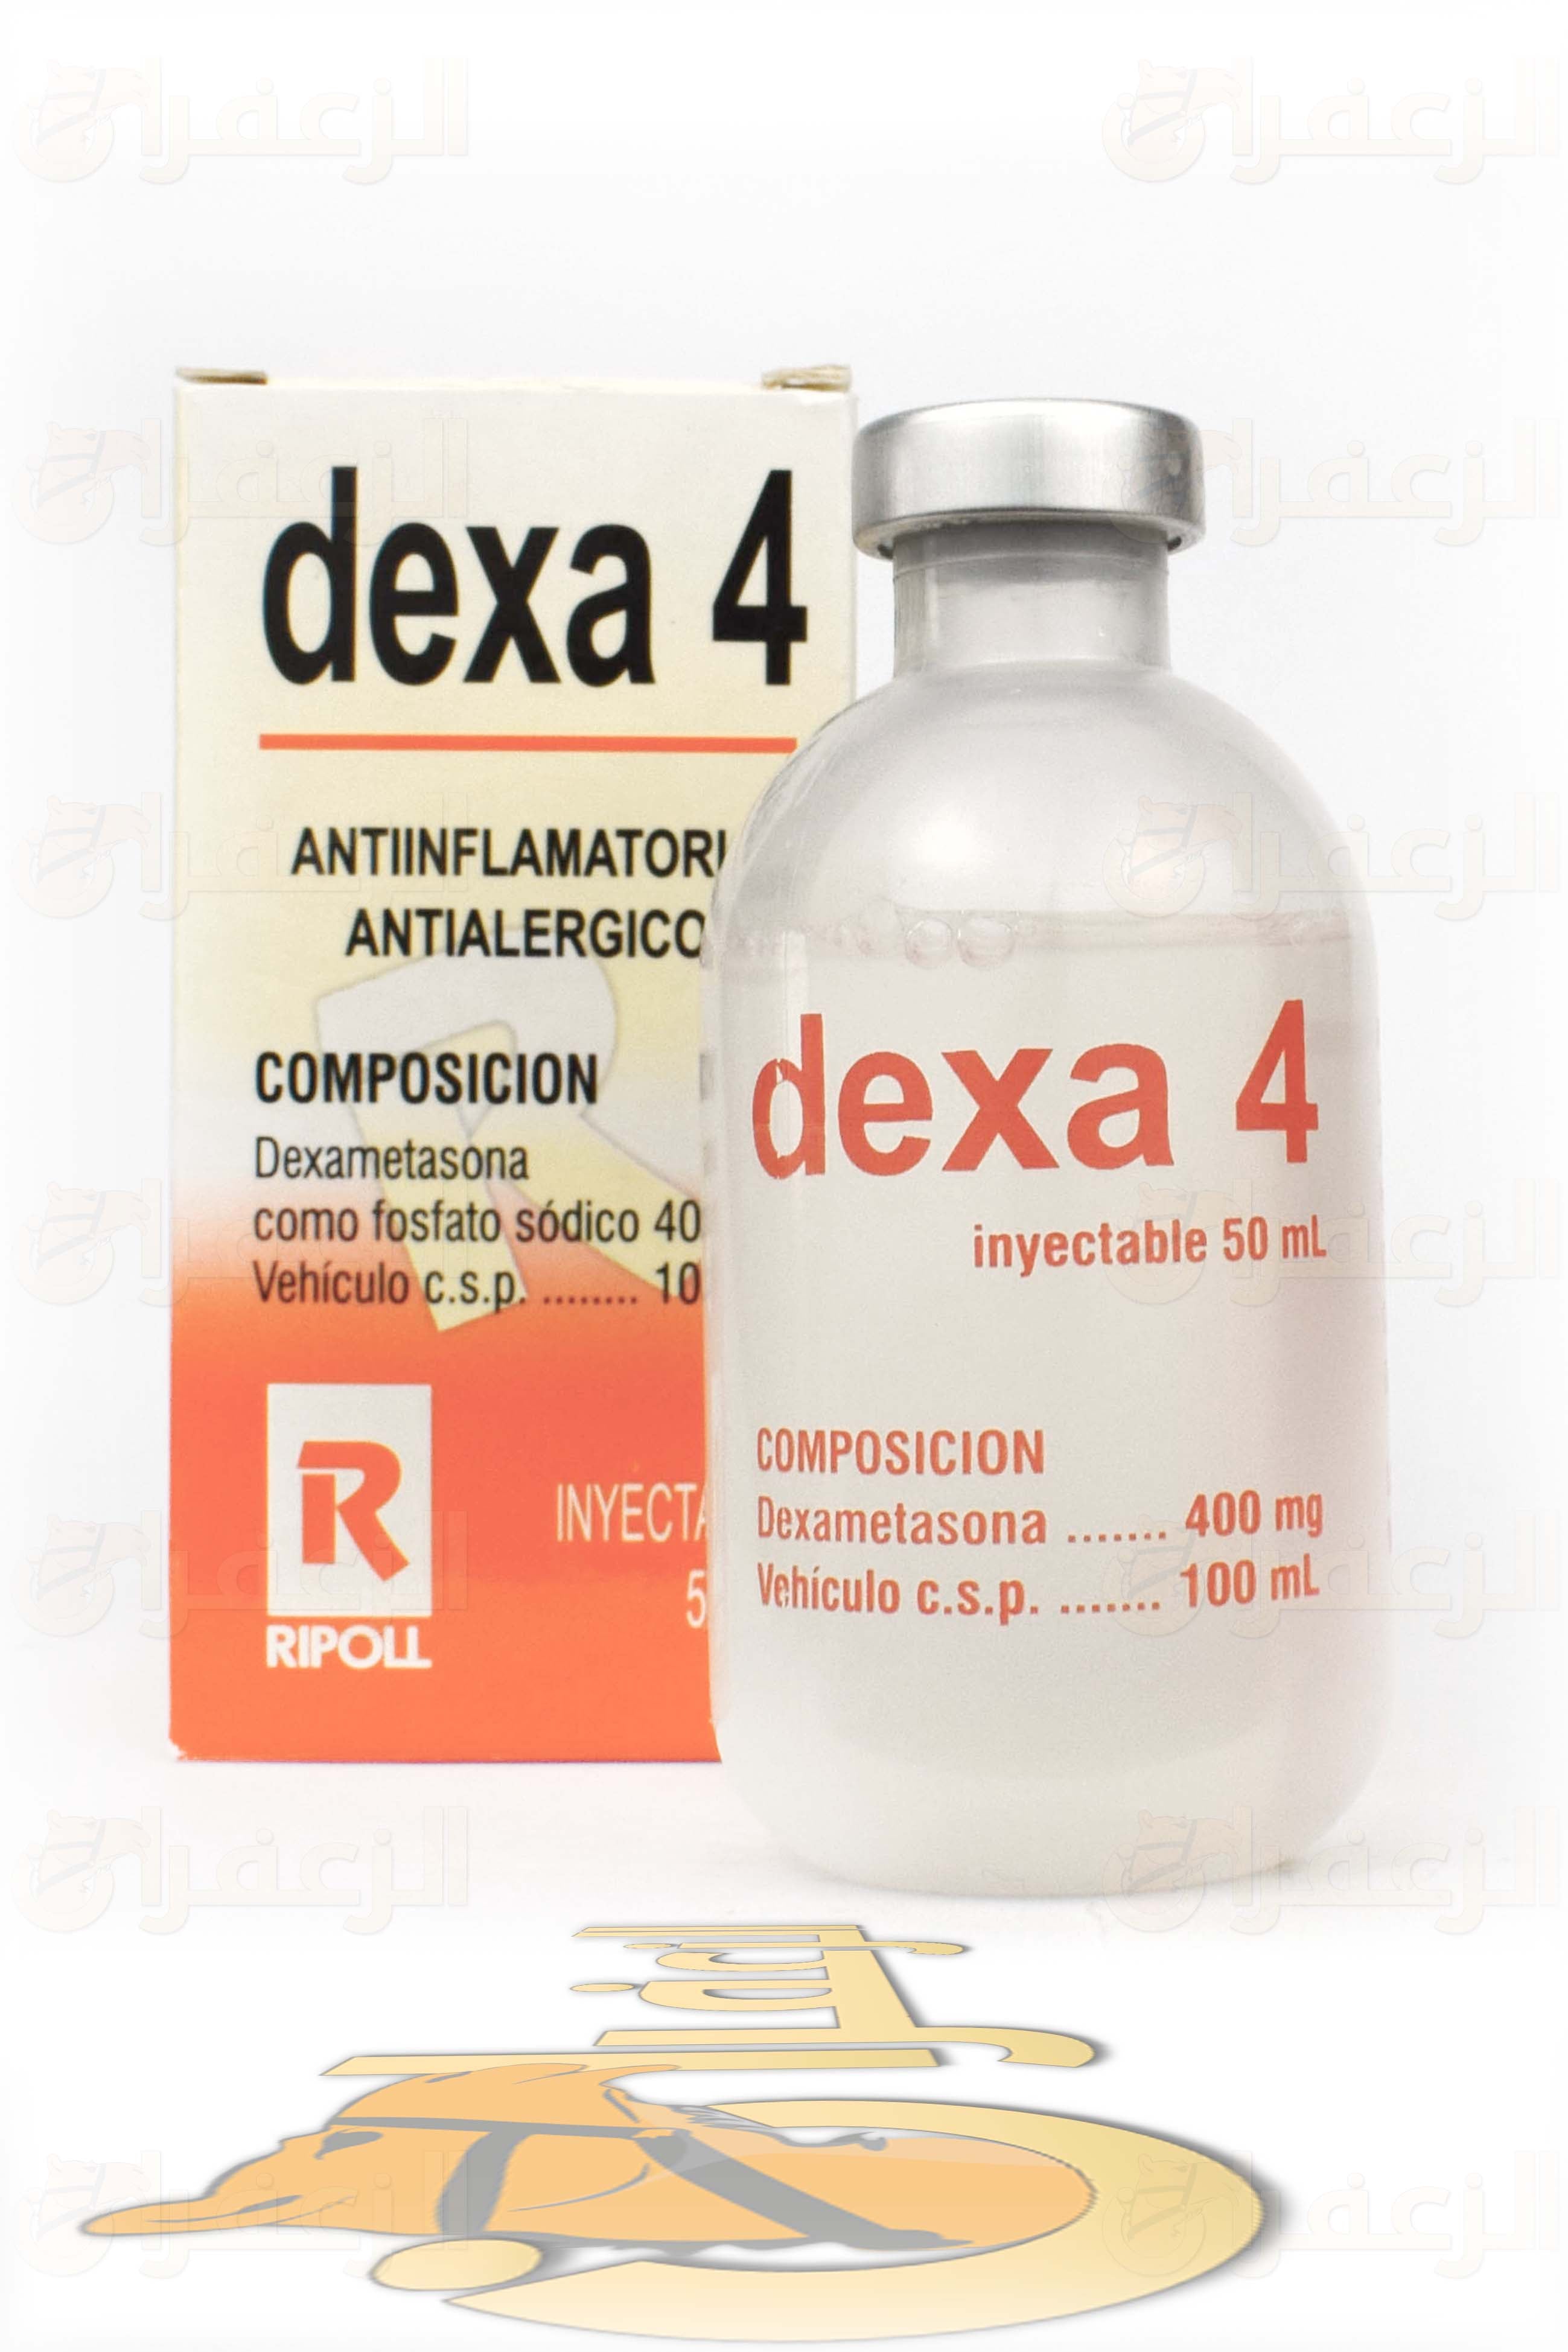 دكسا 4 \ DEXA 4 - الزعفران